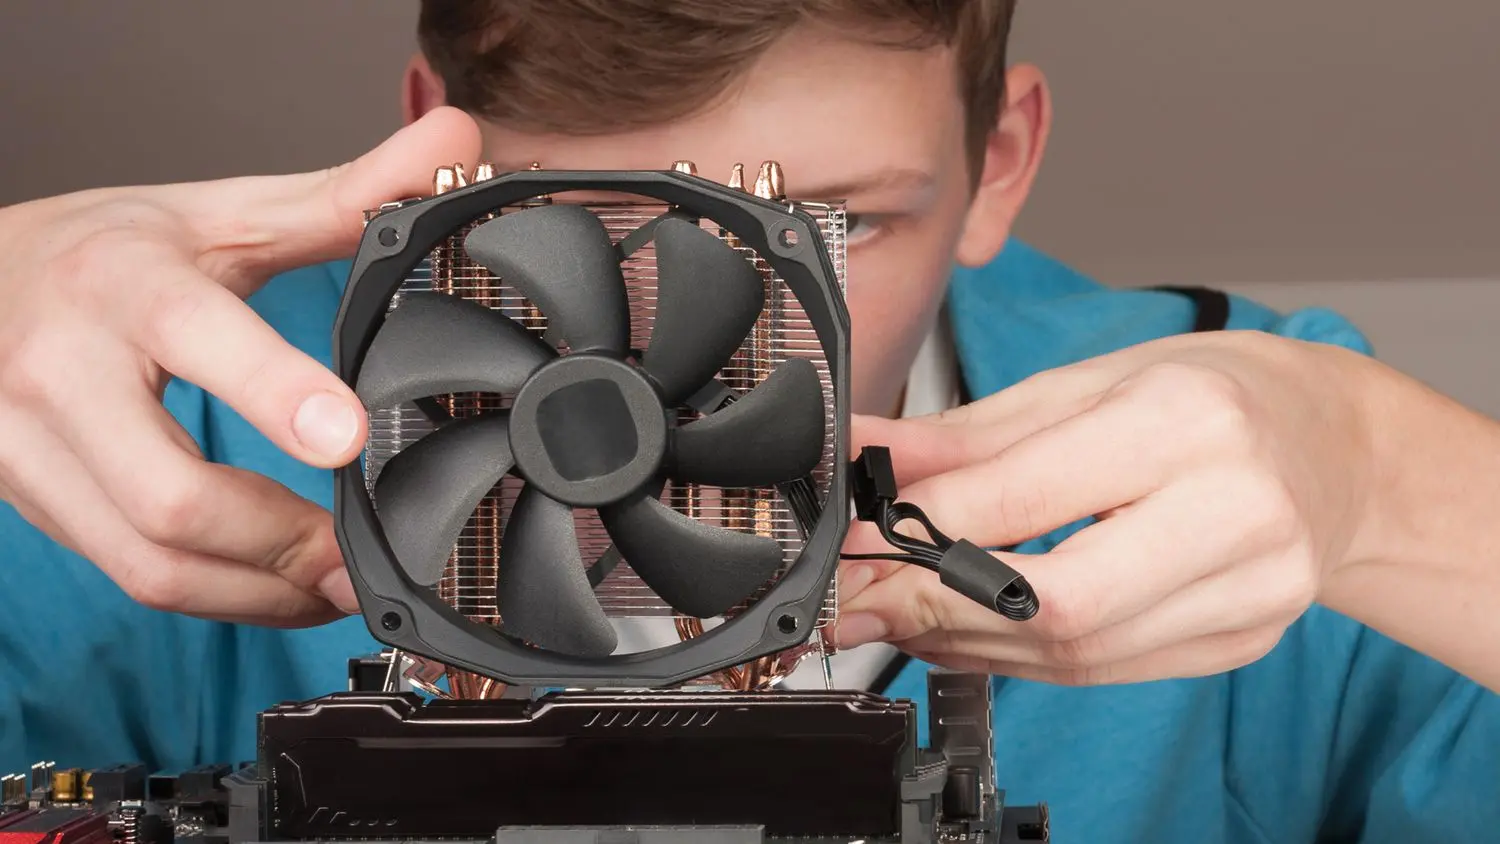 hewlett packard cpu fan - How do I fix my CPU fan